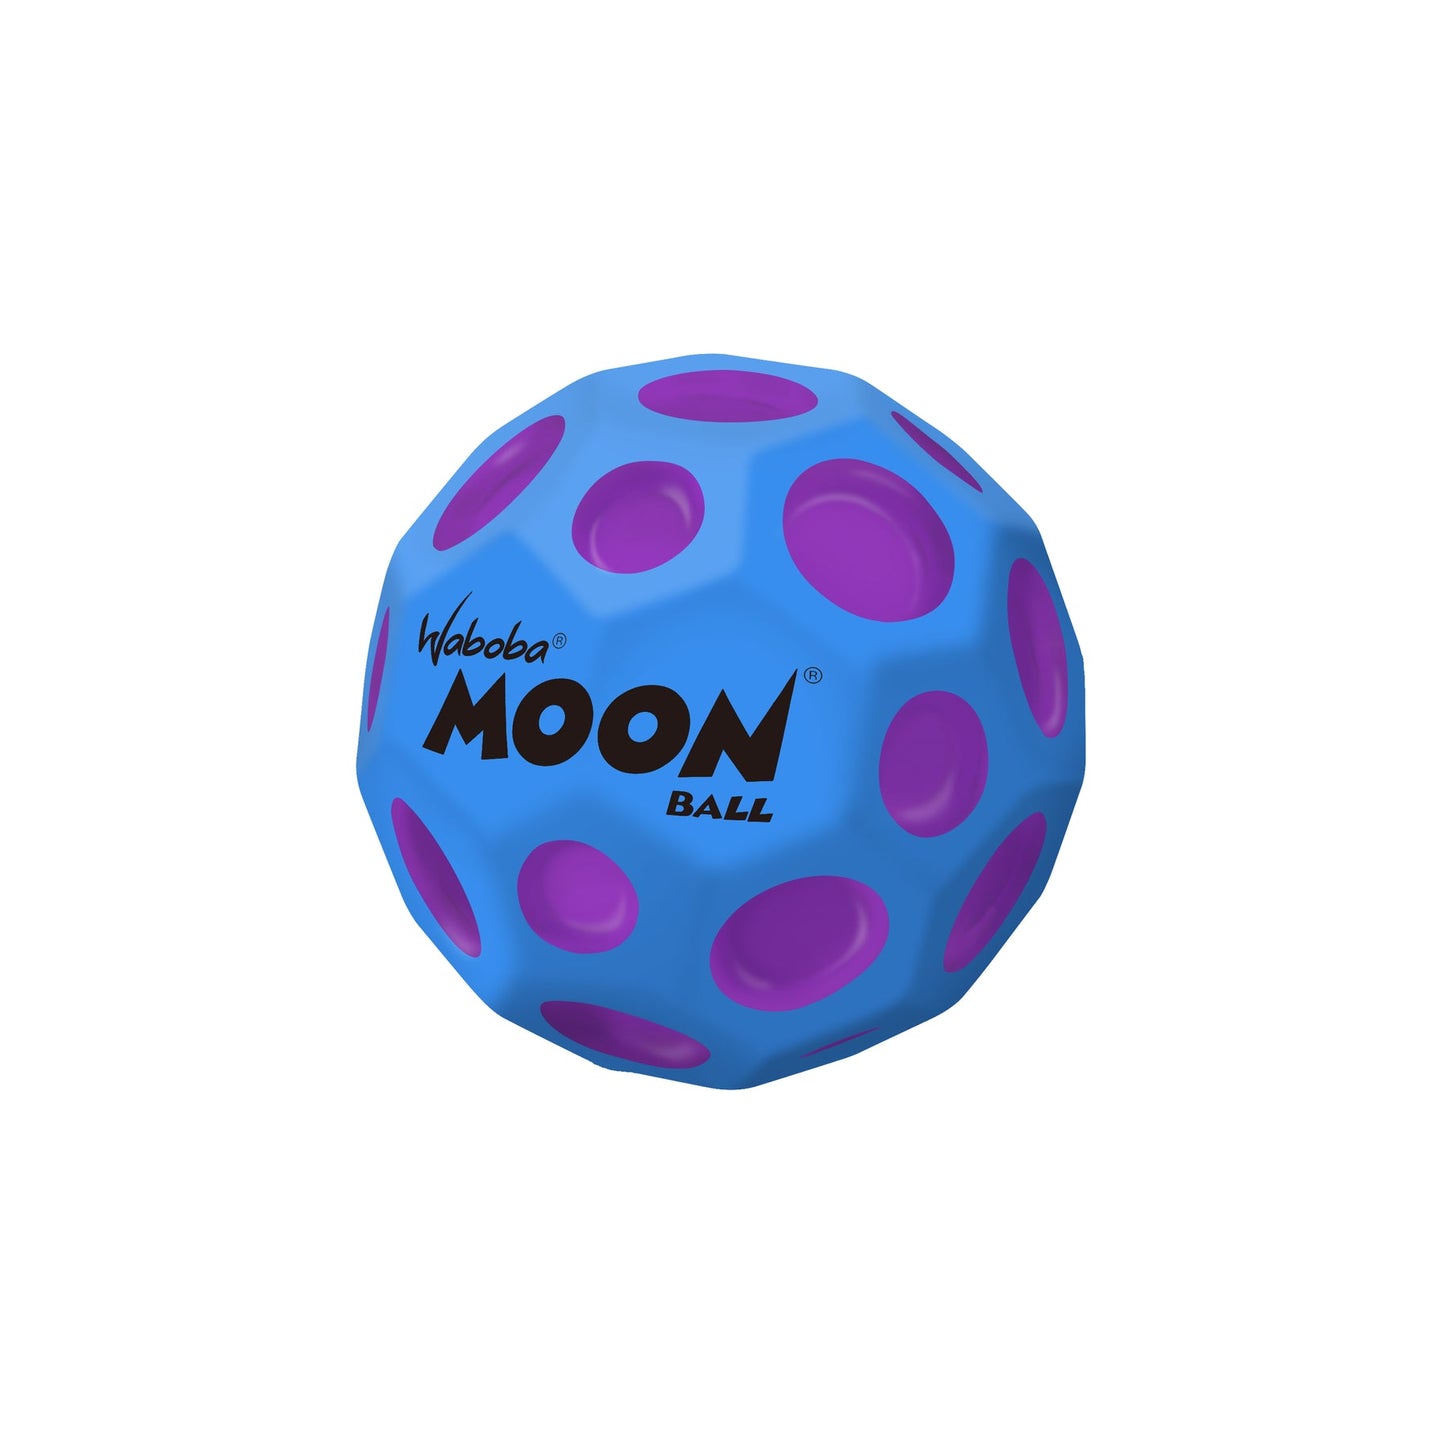 Waboba Martian Moonball